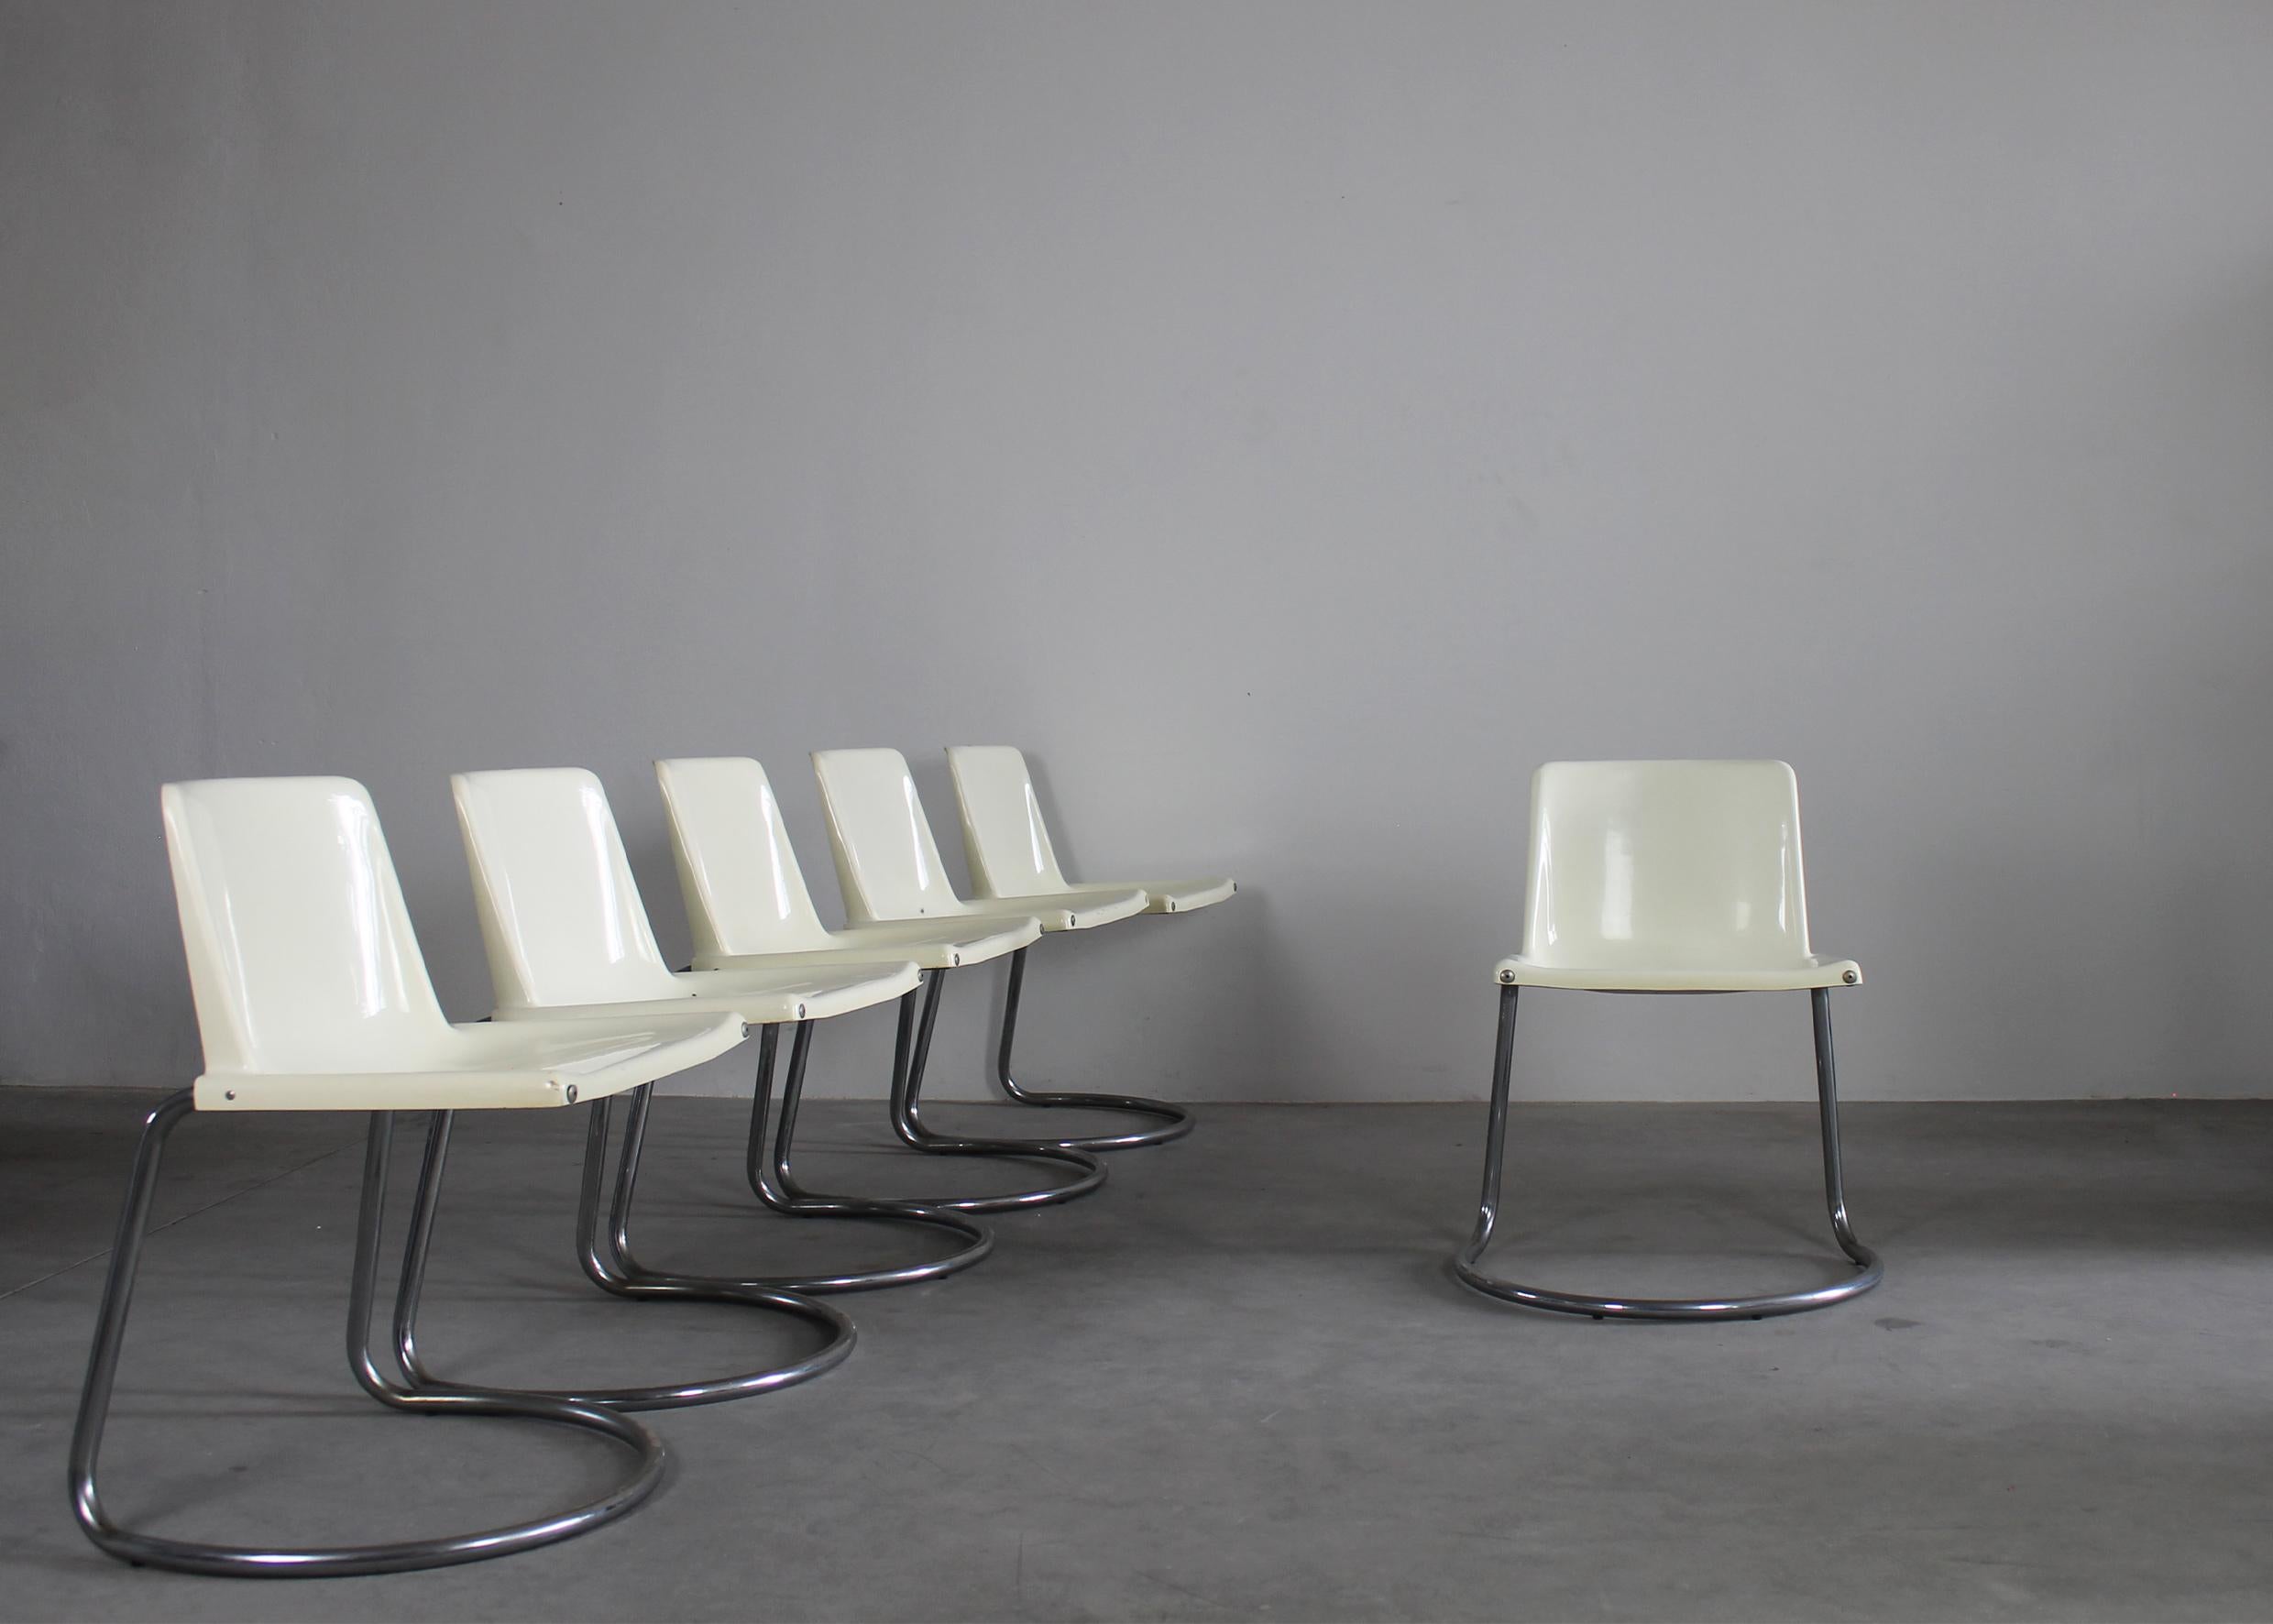 Lot de six chaises Alessia avec pieds en métal tubulaire chromé et sièges en ABS blanc, conçues par Giotto Stoppino et fabriquées par Driade dans les années 1970. 

(Marque du fabricant visible sous les sièges)

Giotto Stoppino est l'une des figures